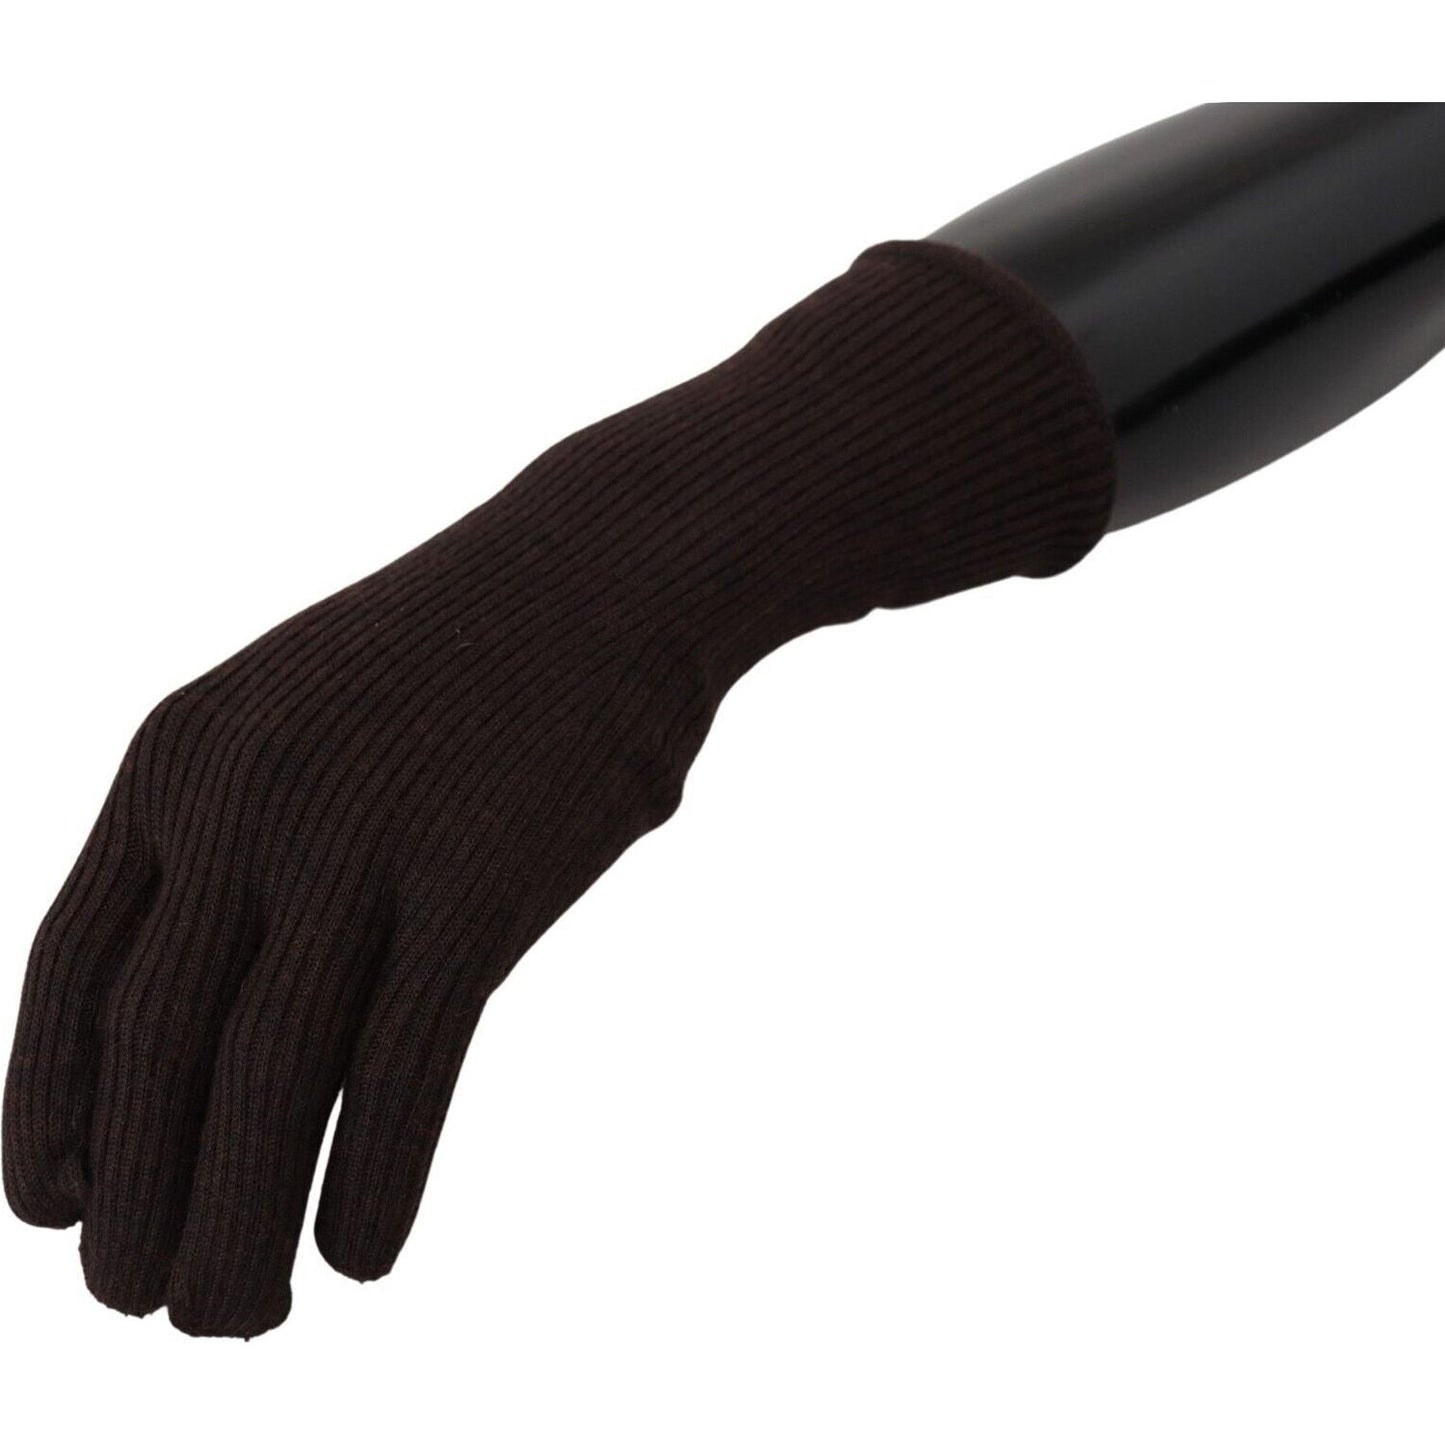 Dolce & Gabbana Elegant Silk Cashmere Brown Gloves brown-cashmere-silk-hands-mitten-mens-gloves